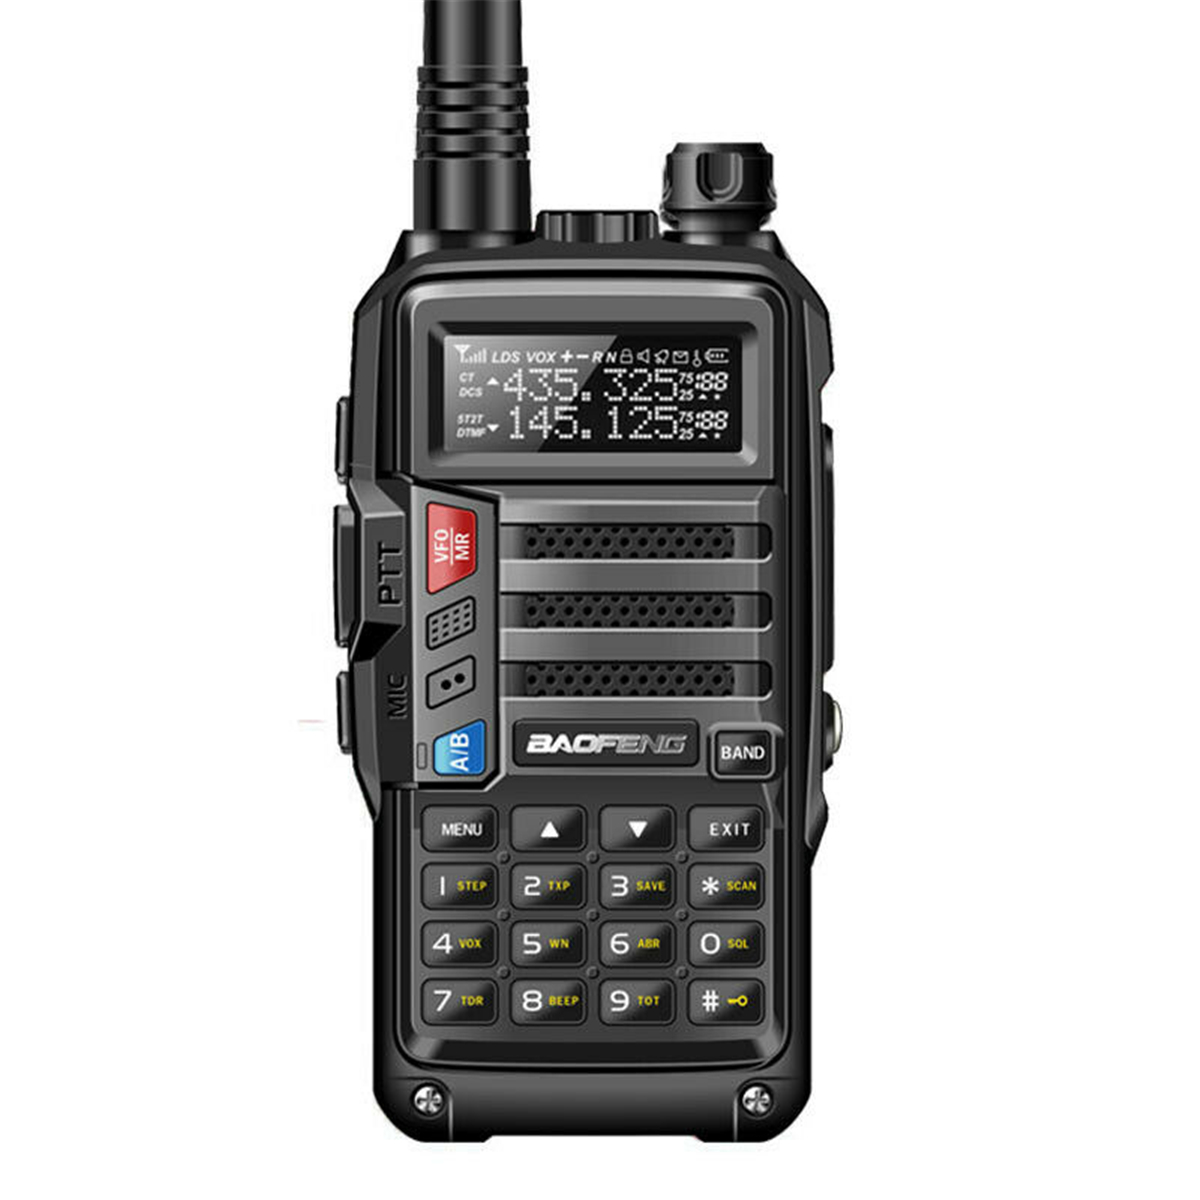 

BaoFeng UV-B3 Plus Walkie Talkie VHF UHF 128-канальный двусторонний Радио CB Функциональный приемопередатчик 8 Вт 10 км для AU Plug